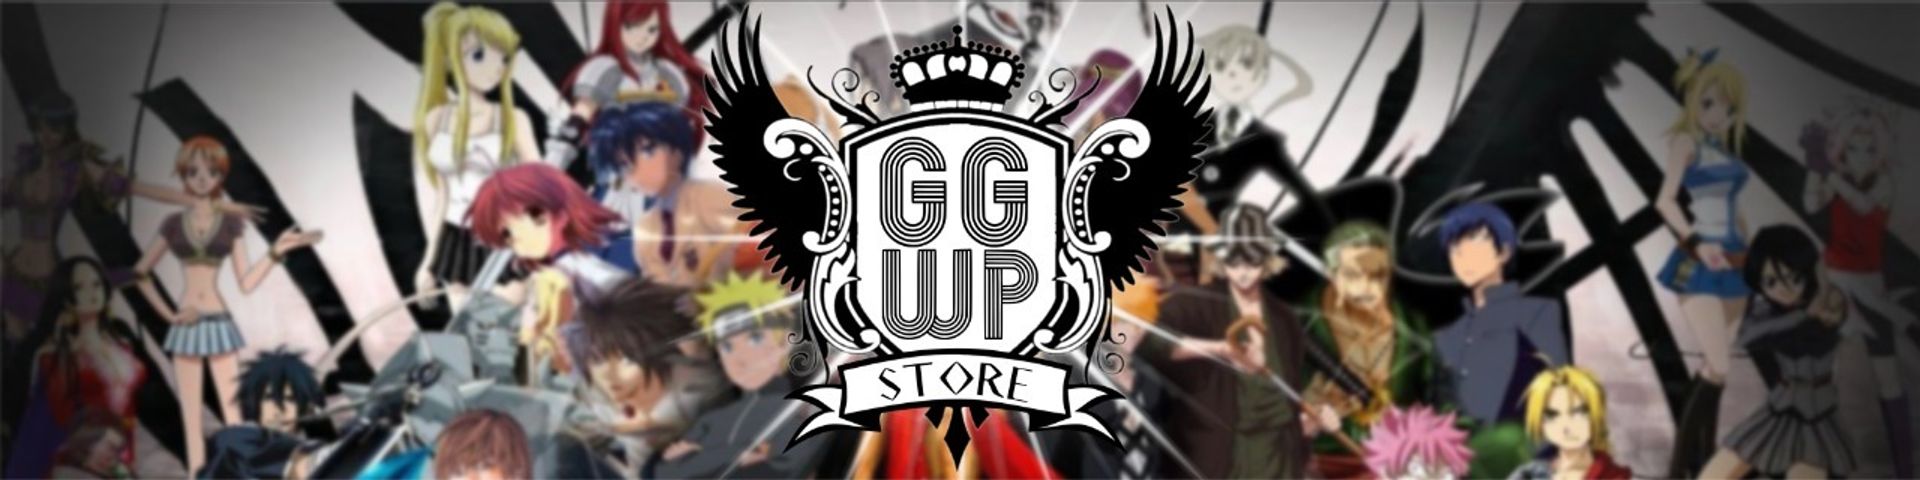 Nome da loja  GGWP Store